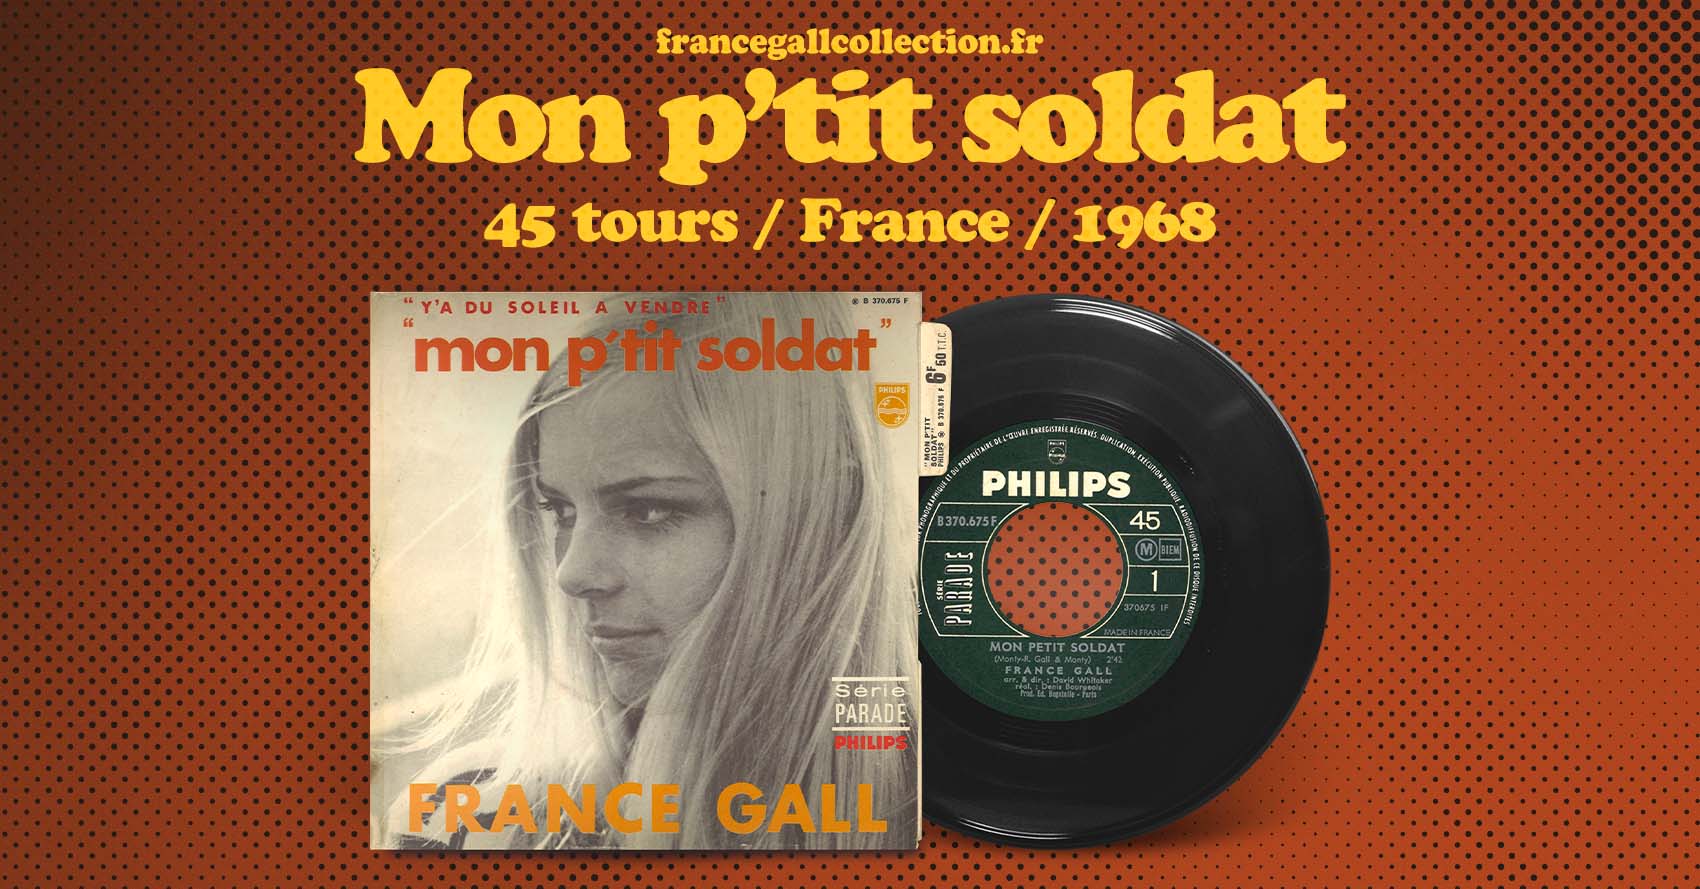 Ce 45 tours édité en juillet 1968 contient les titres Mon p'tit soldat et Y'a du soleil à vendre en face B, écrites par Robert Gall et Monty et composées par Monty.